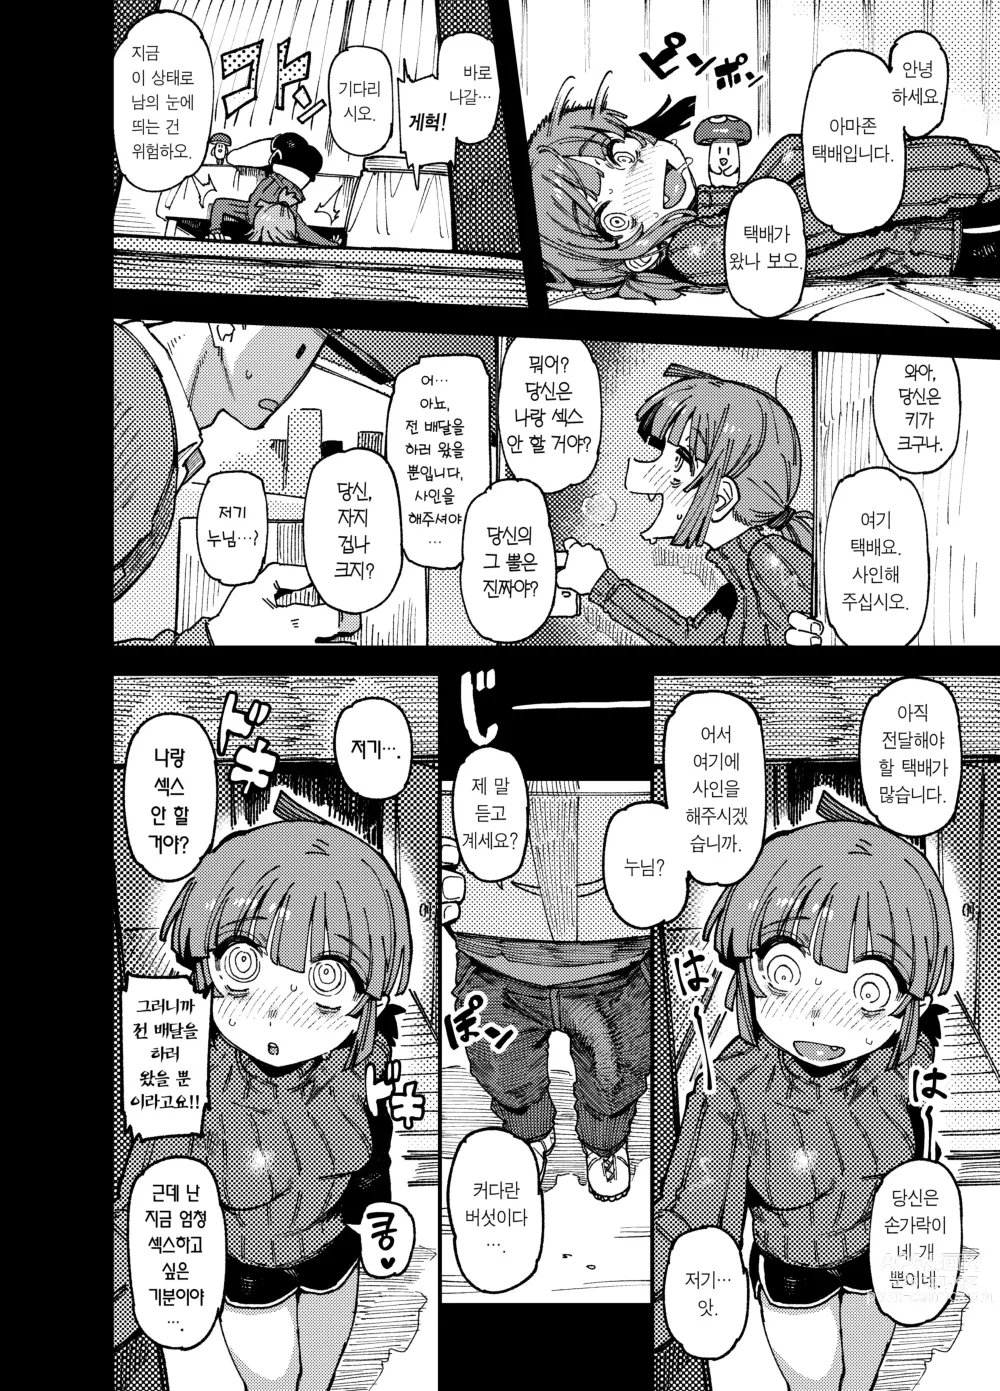 Page 10 of doujinshi 집이 너무 습해서 자란 환각을 유발하는 버섯을 잘못 먹고 발정이 나서 생긴 일들